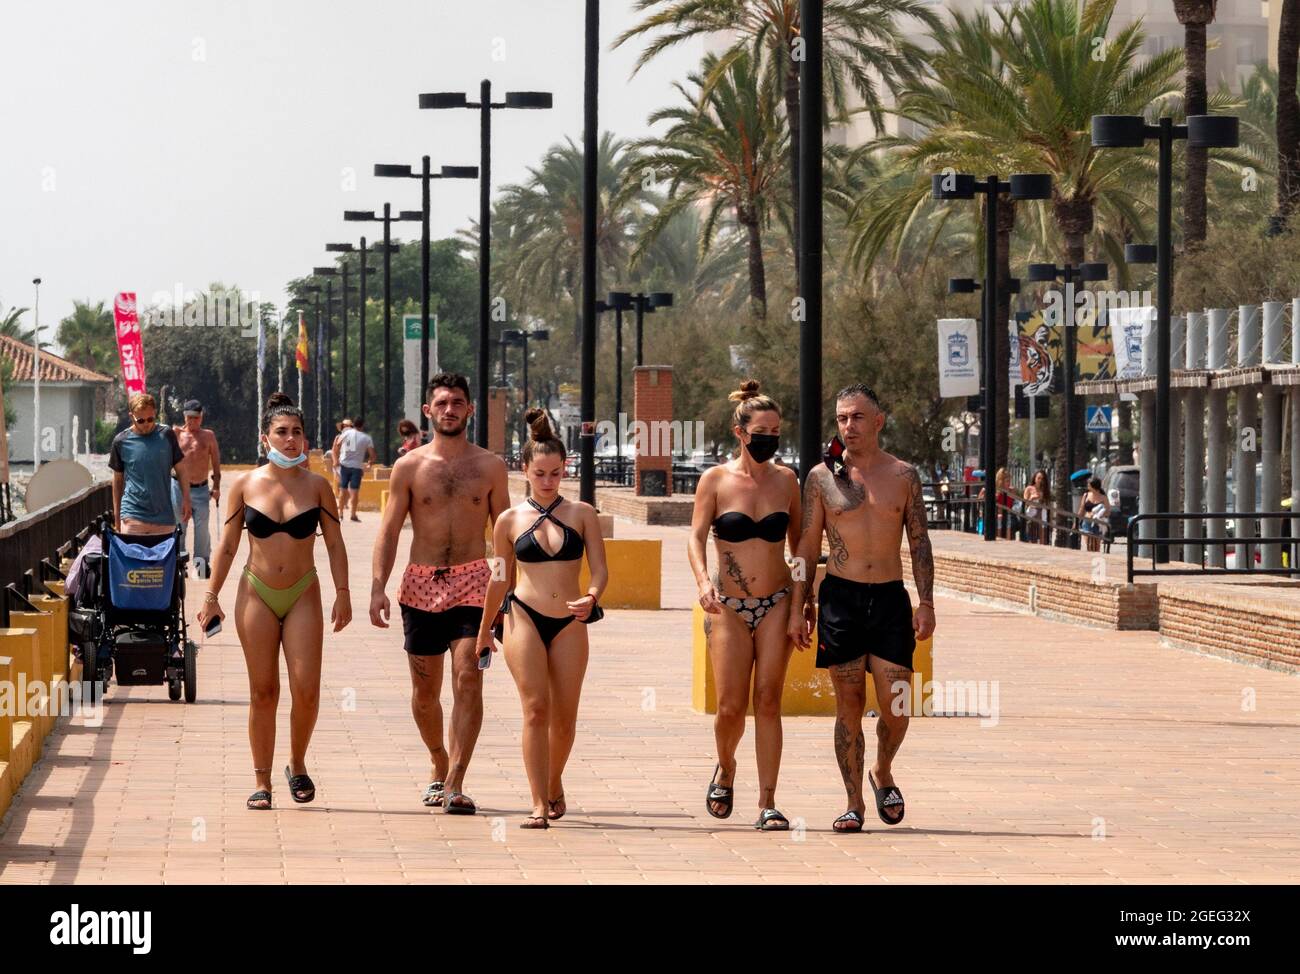 pic muestra: Los bums en la exhibición como el corte alto del bikini y los  tangos fueron toda la rabia en las playas este año Brits chisporrotear en  temperaturas abrasadoras adentro Fotografía